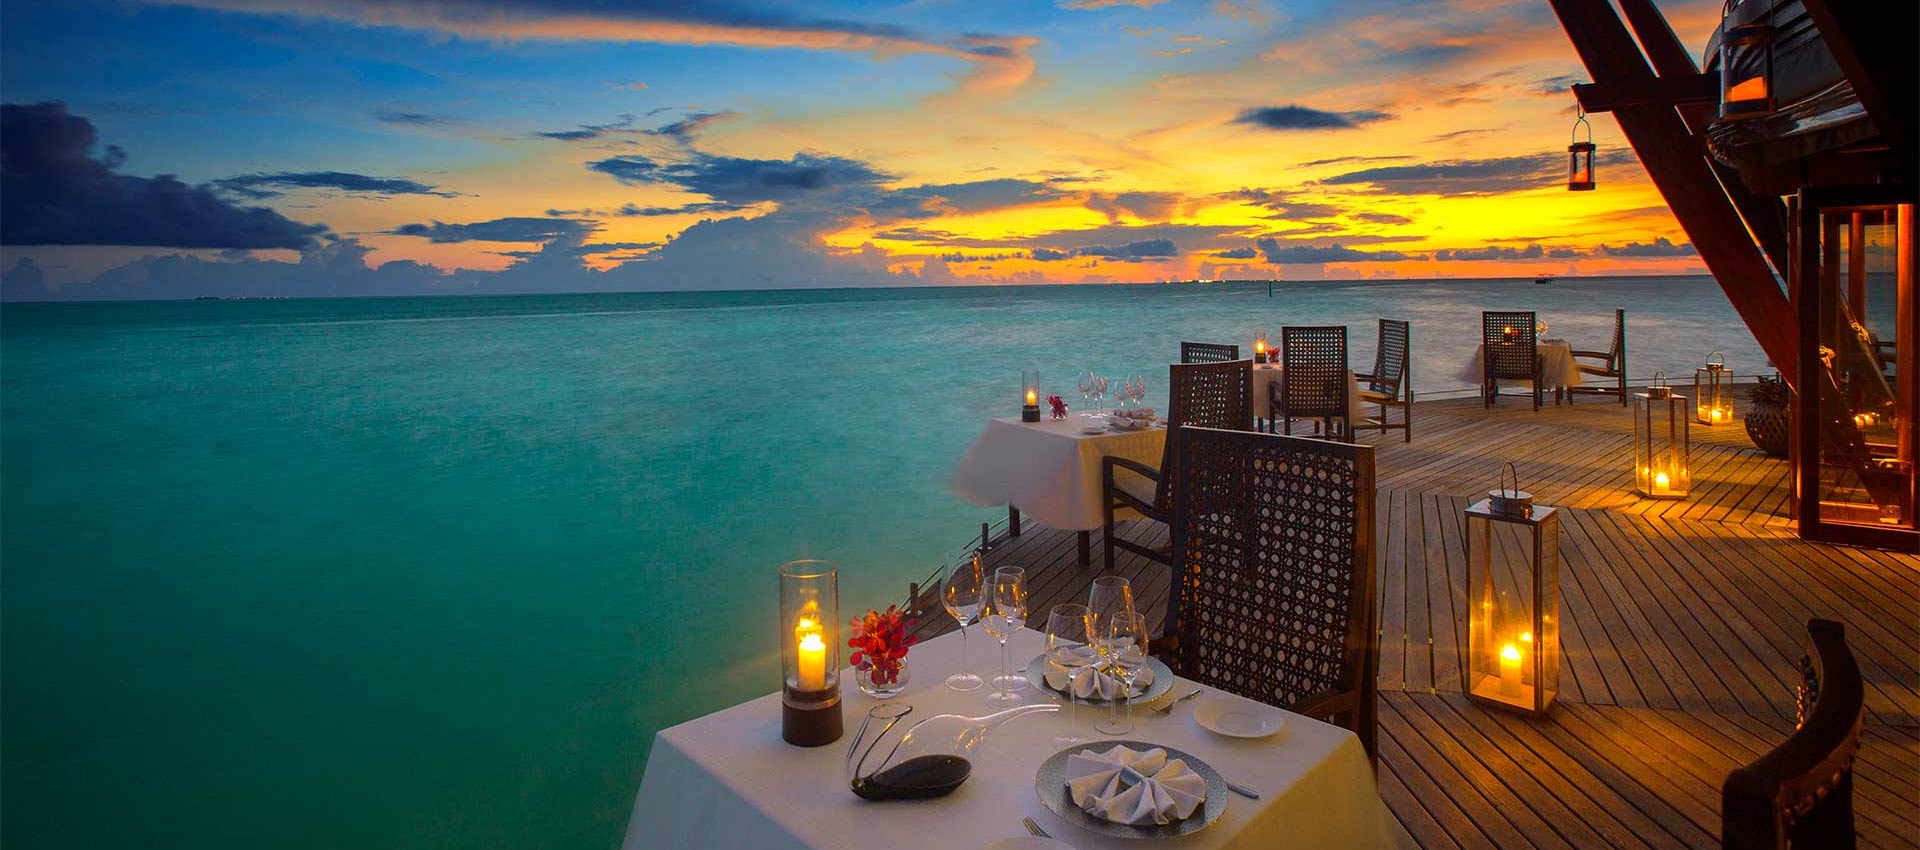 Dining Areas with Sea Views at Baros Maldives 